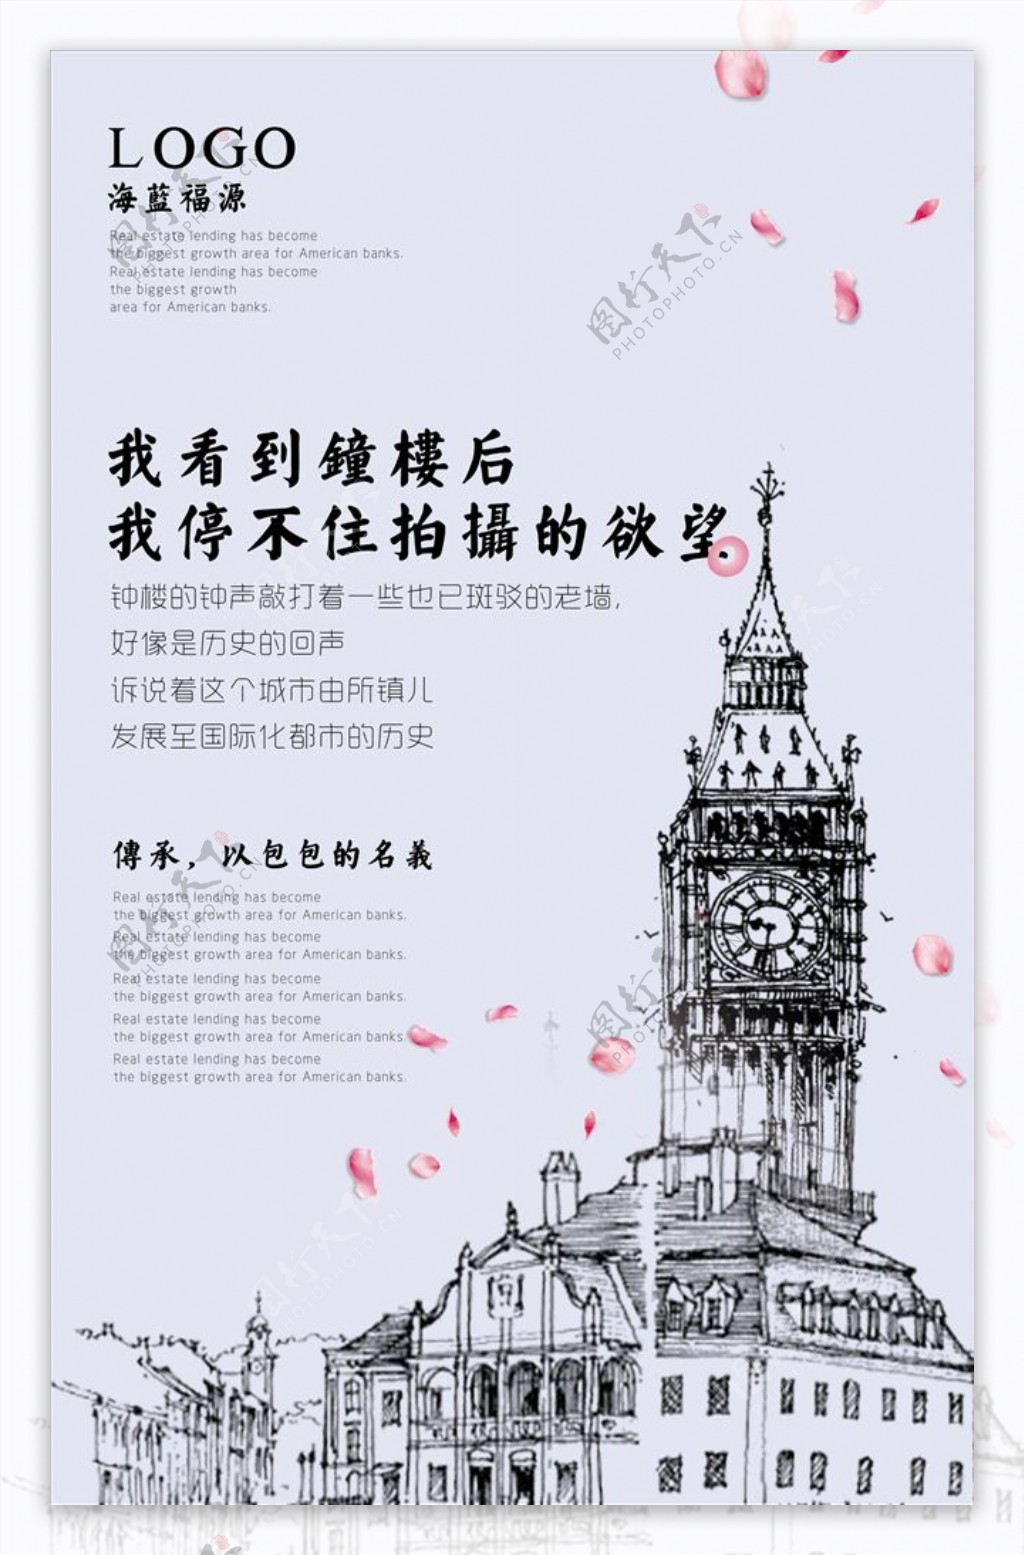 中国风钢笔画房地产电梯广告